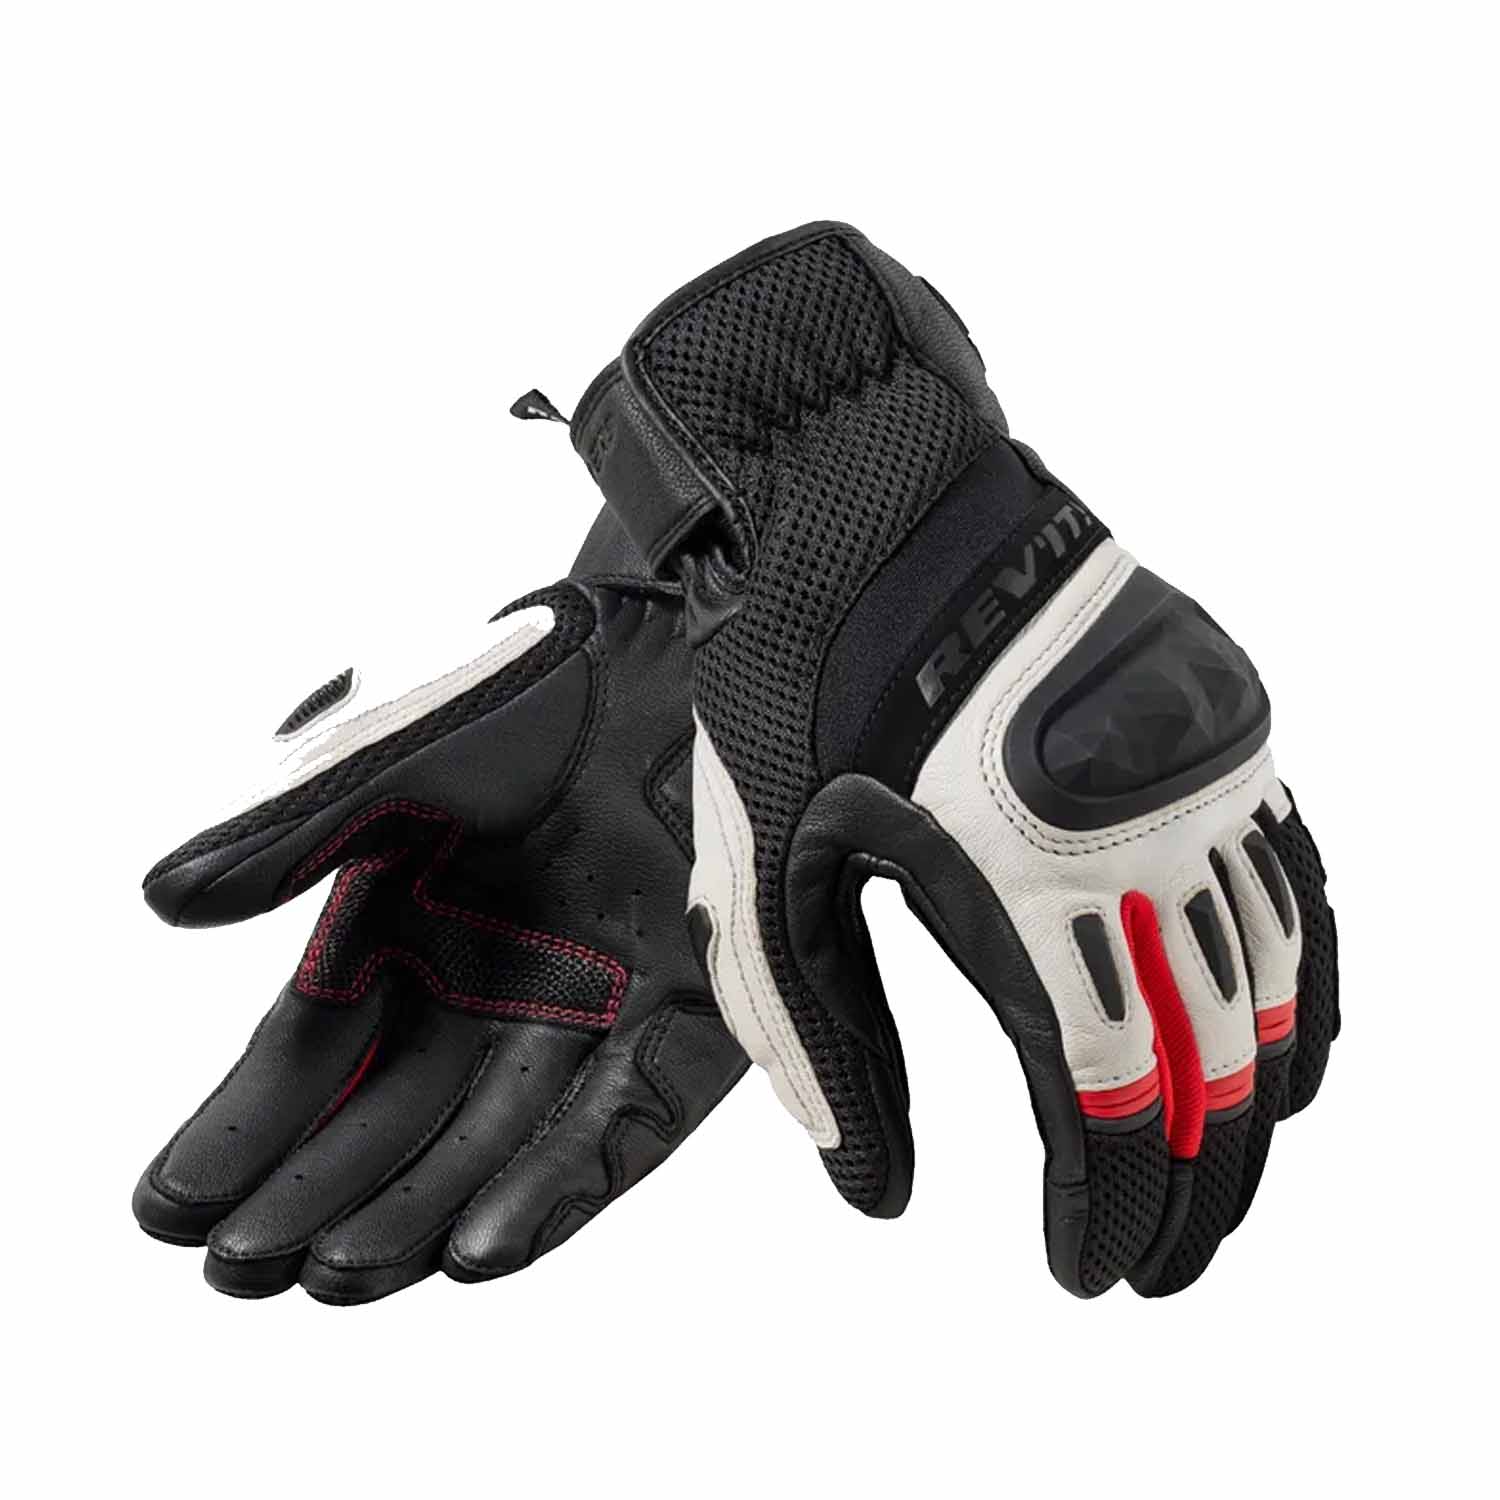 Image of REV'IT! Dirt 4 Gloves Black Red Größe S